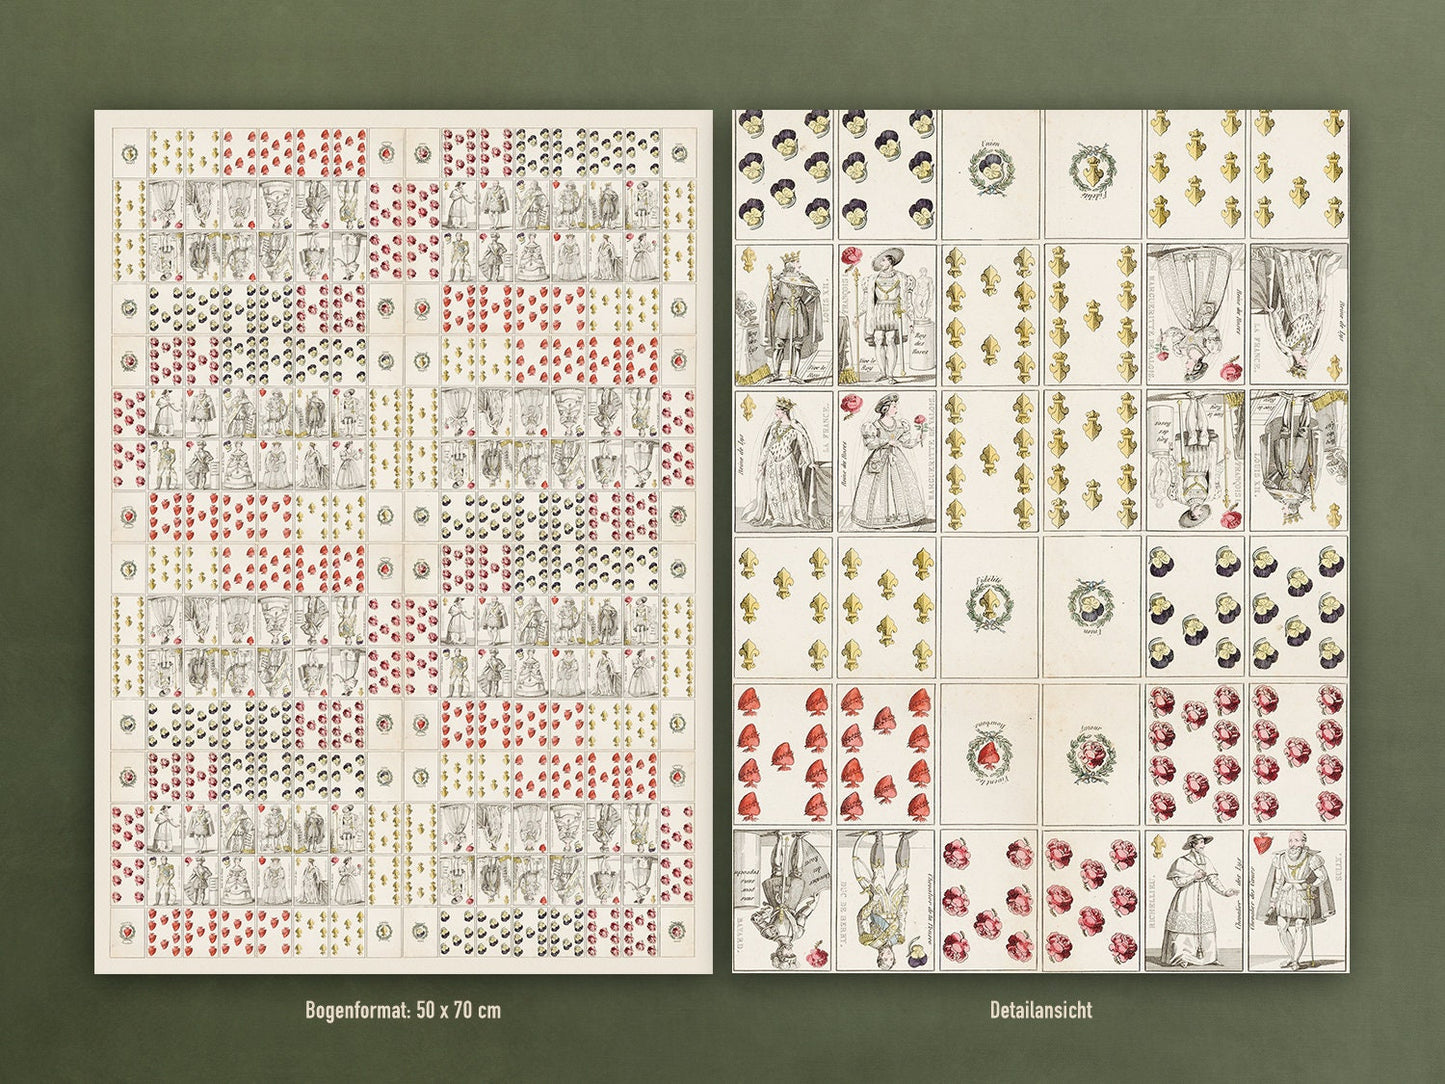 Geschenkpapier Set, Motiv Spielkarten: 10 Bögen mit 5 Motiven, 50 x 70 cm, 20er Jahre, Vintage, Bube, Dame, König, Geschenk